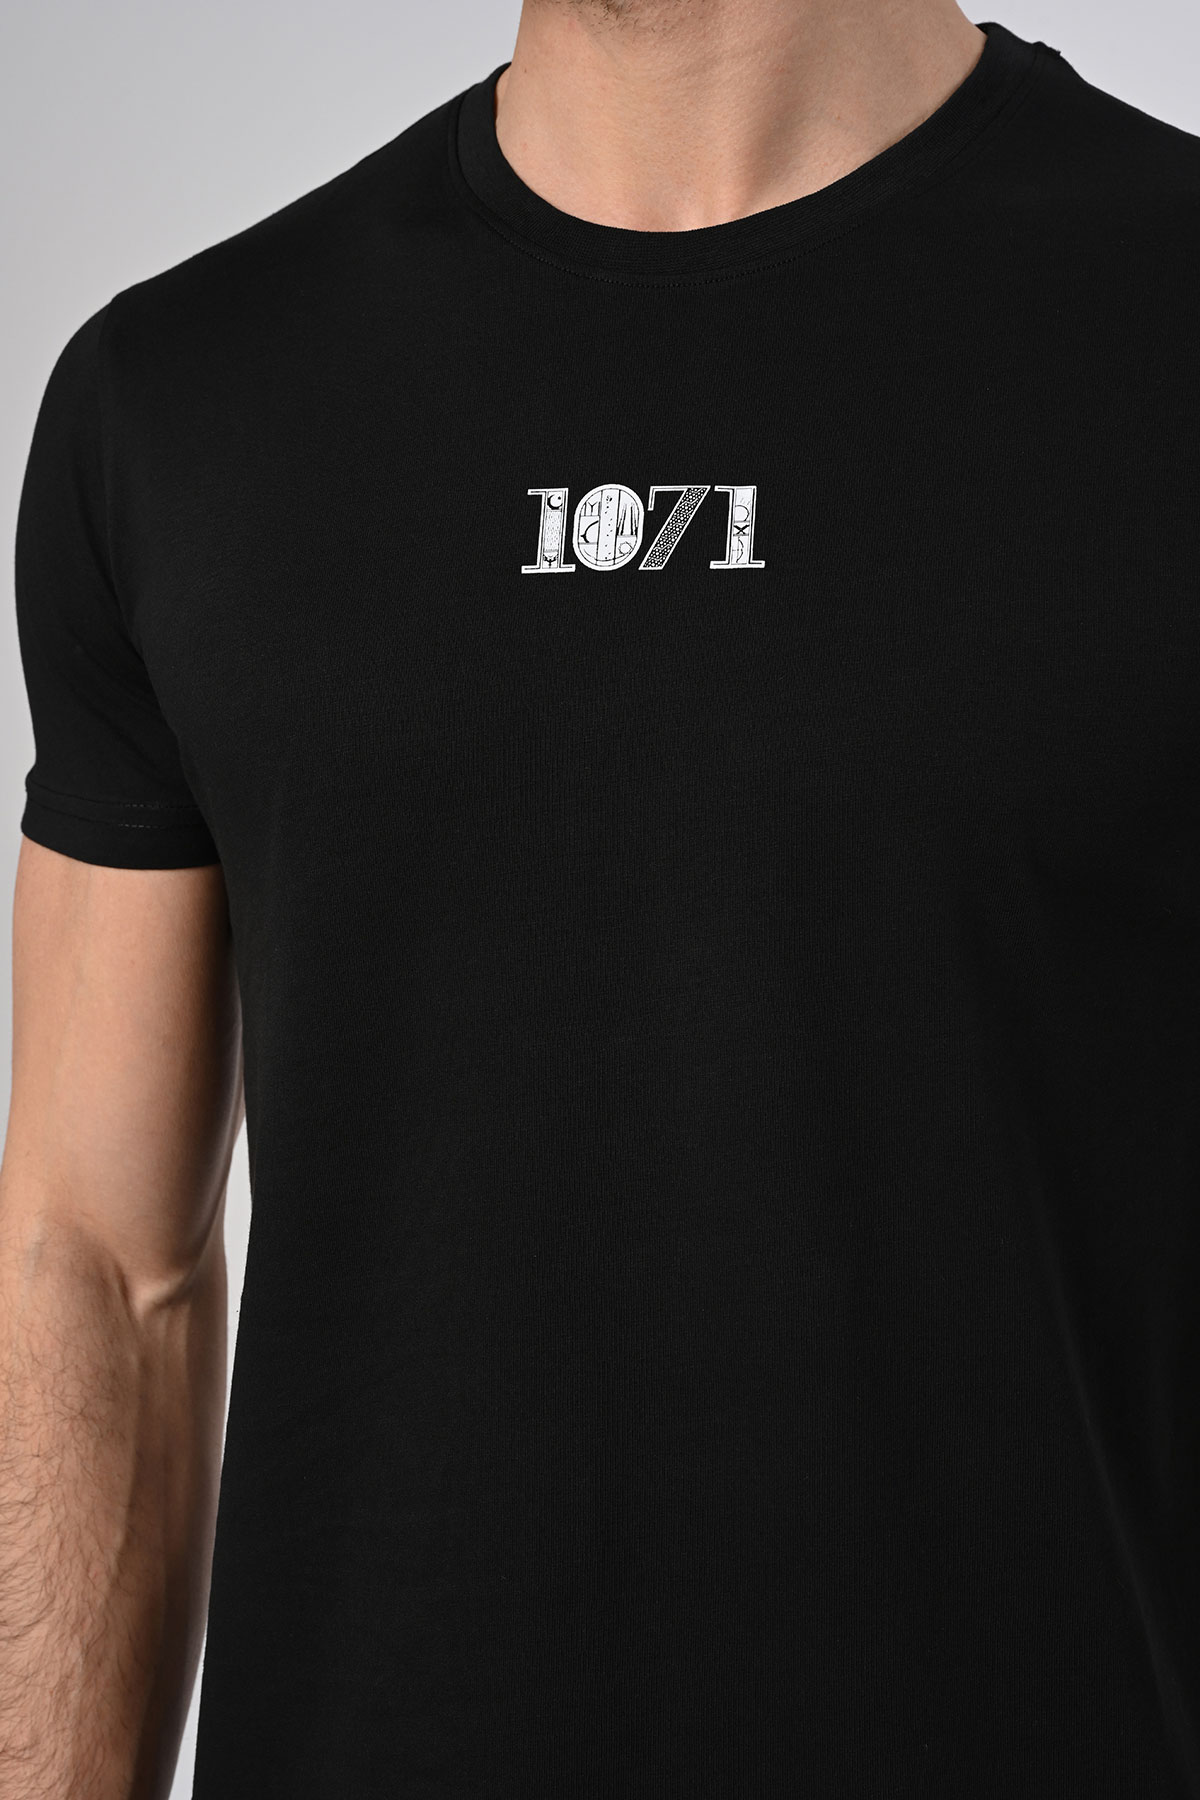 Yeni Sezon 1071 Tasarım Pamuk Bisiklet Yaka Siyah T-shirt 23'